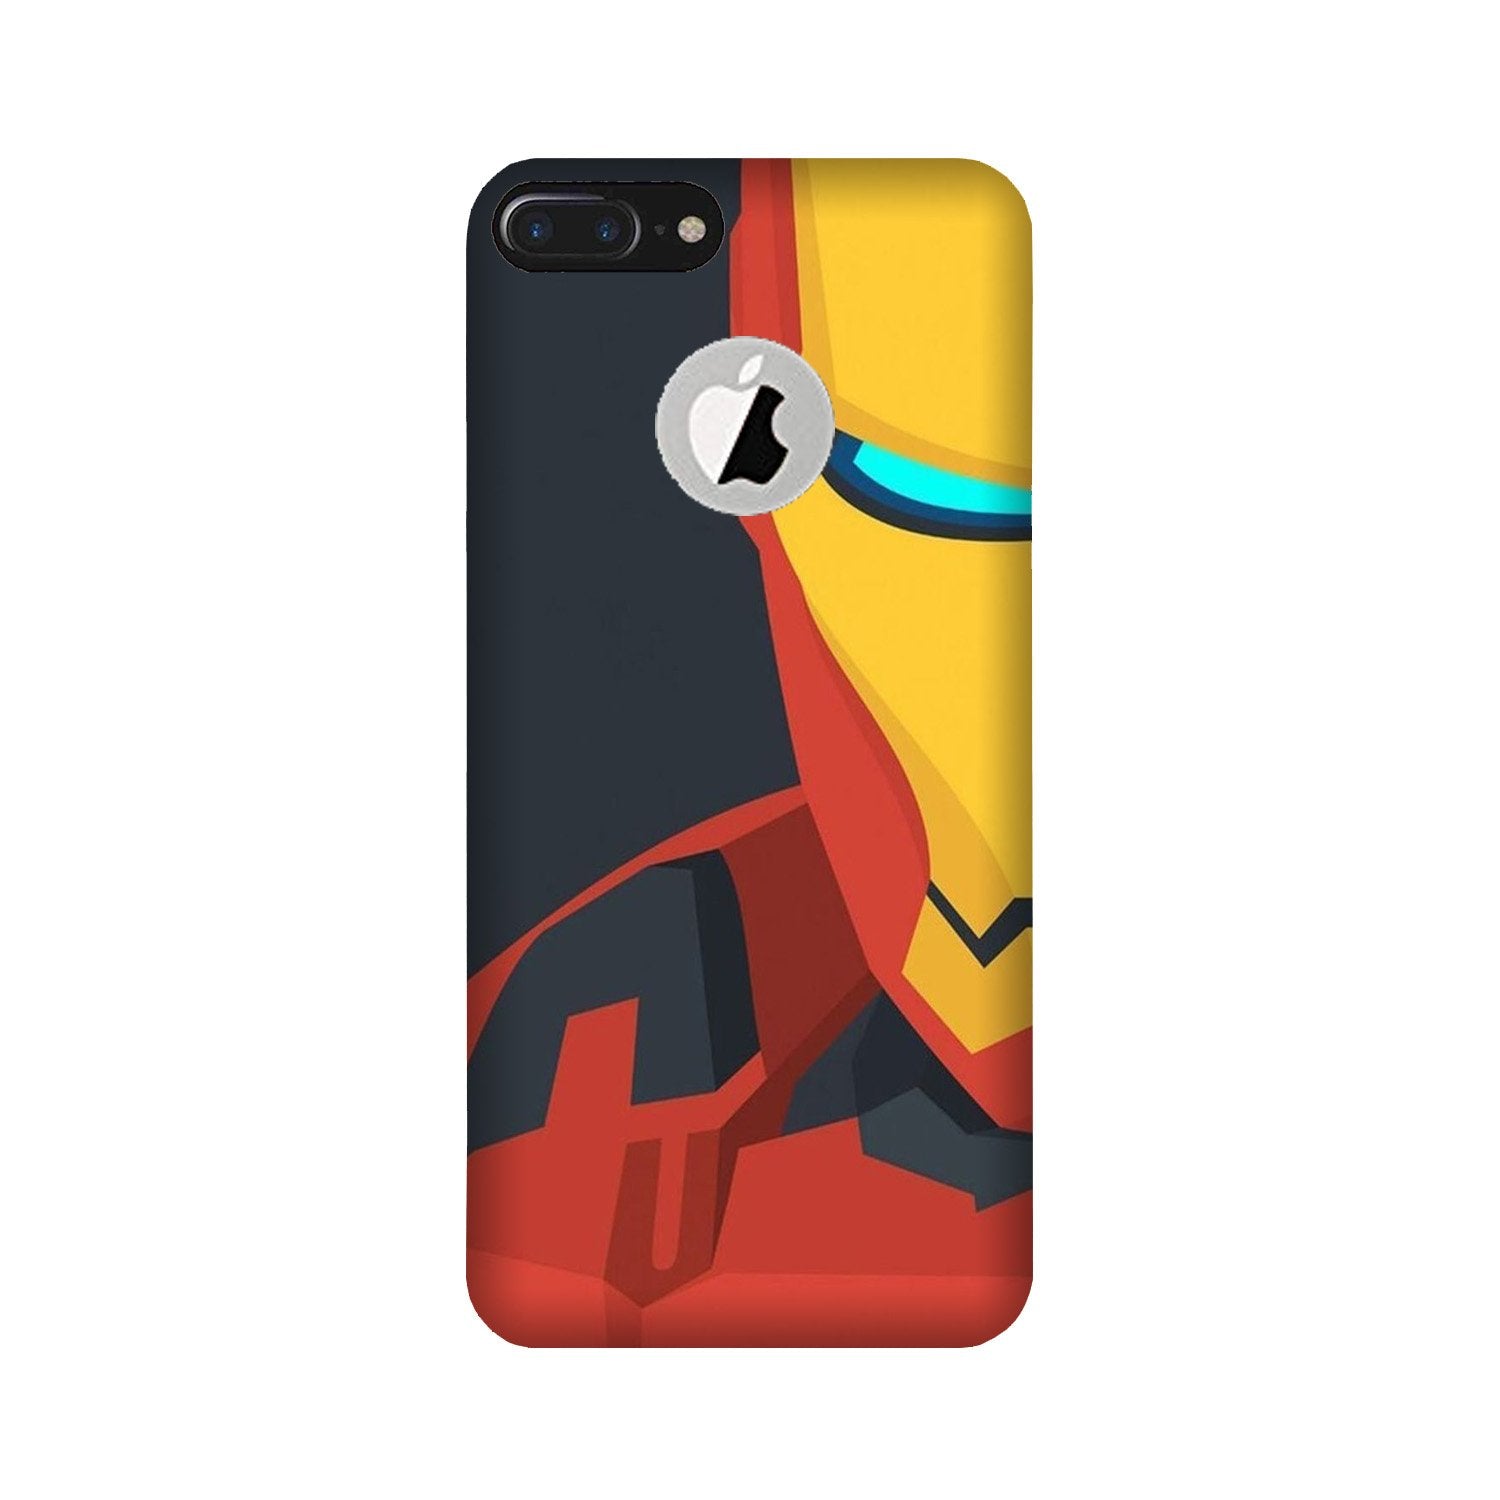 Iron Man Superhero Case for iPhone 7 Plus logo cut(Design - 120)